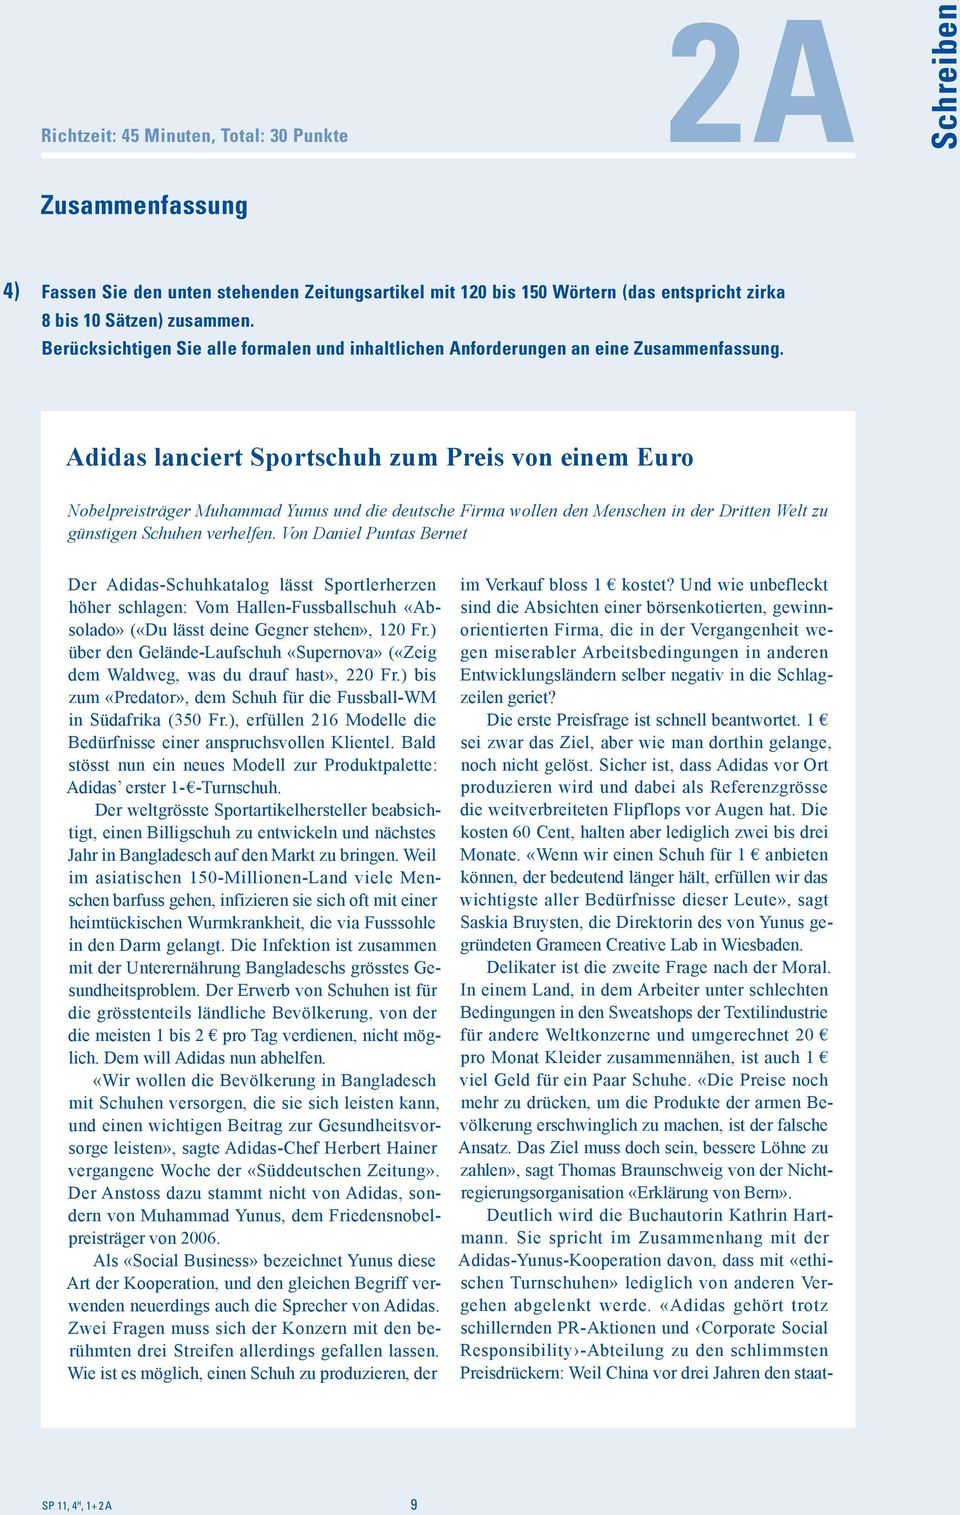 Adidas anciert Sportschuh zum Preis von einem Euro Nobepreisträger Muhammad Yunus und die deutsche Firma woen den Menschen in der Dritten Wet zu günstigen Schuhen verhefen.